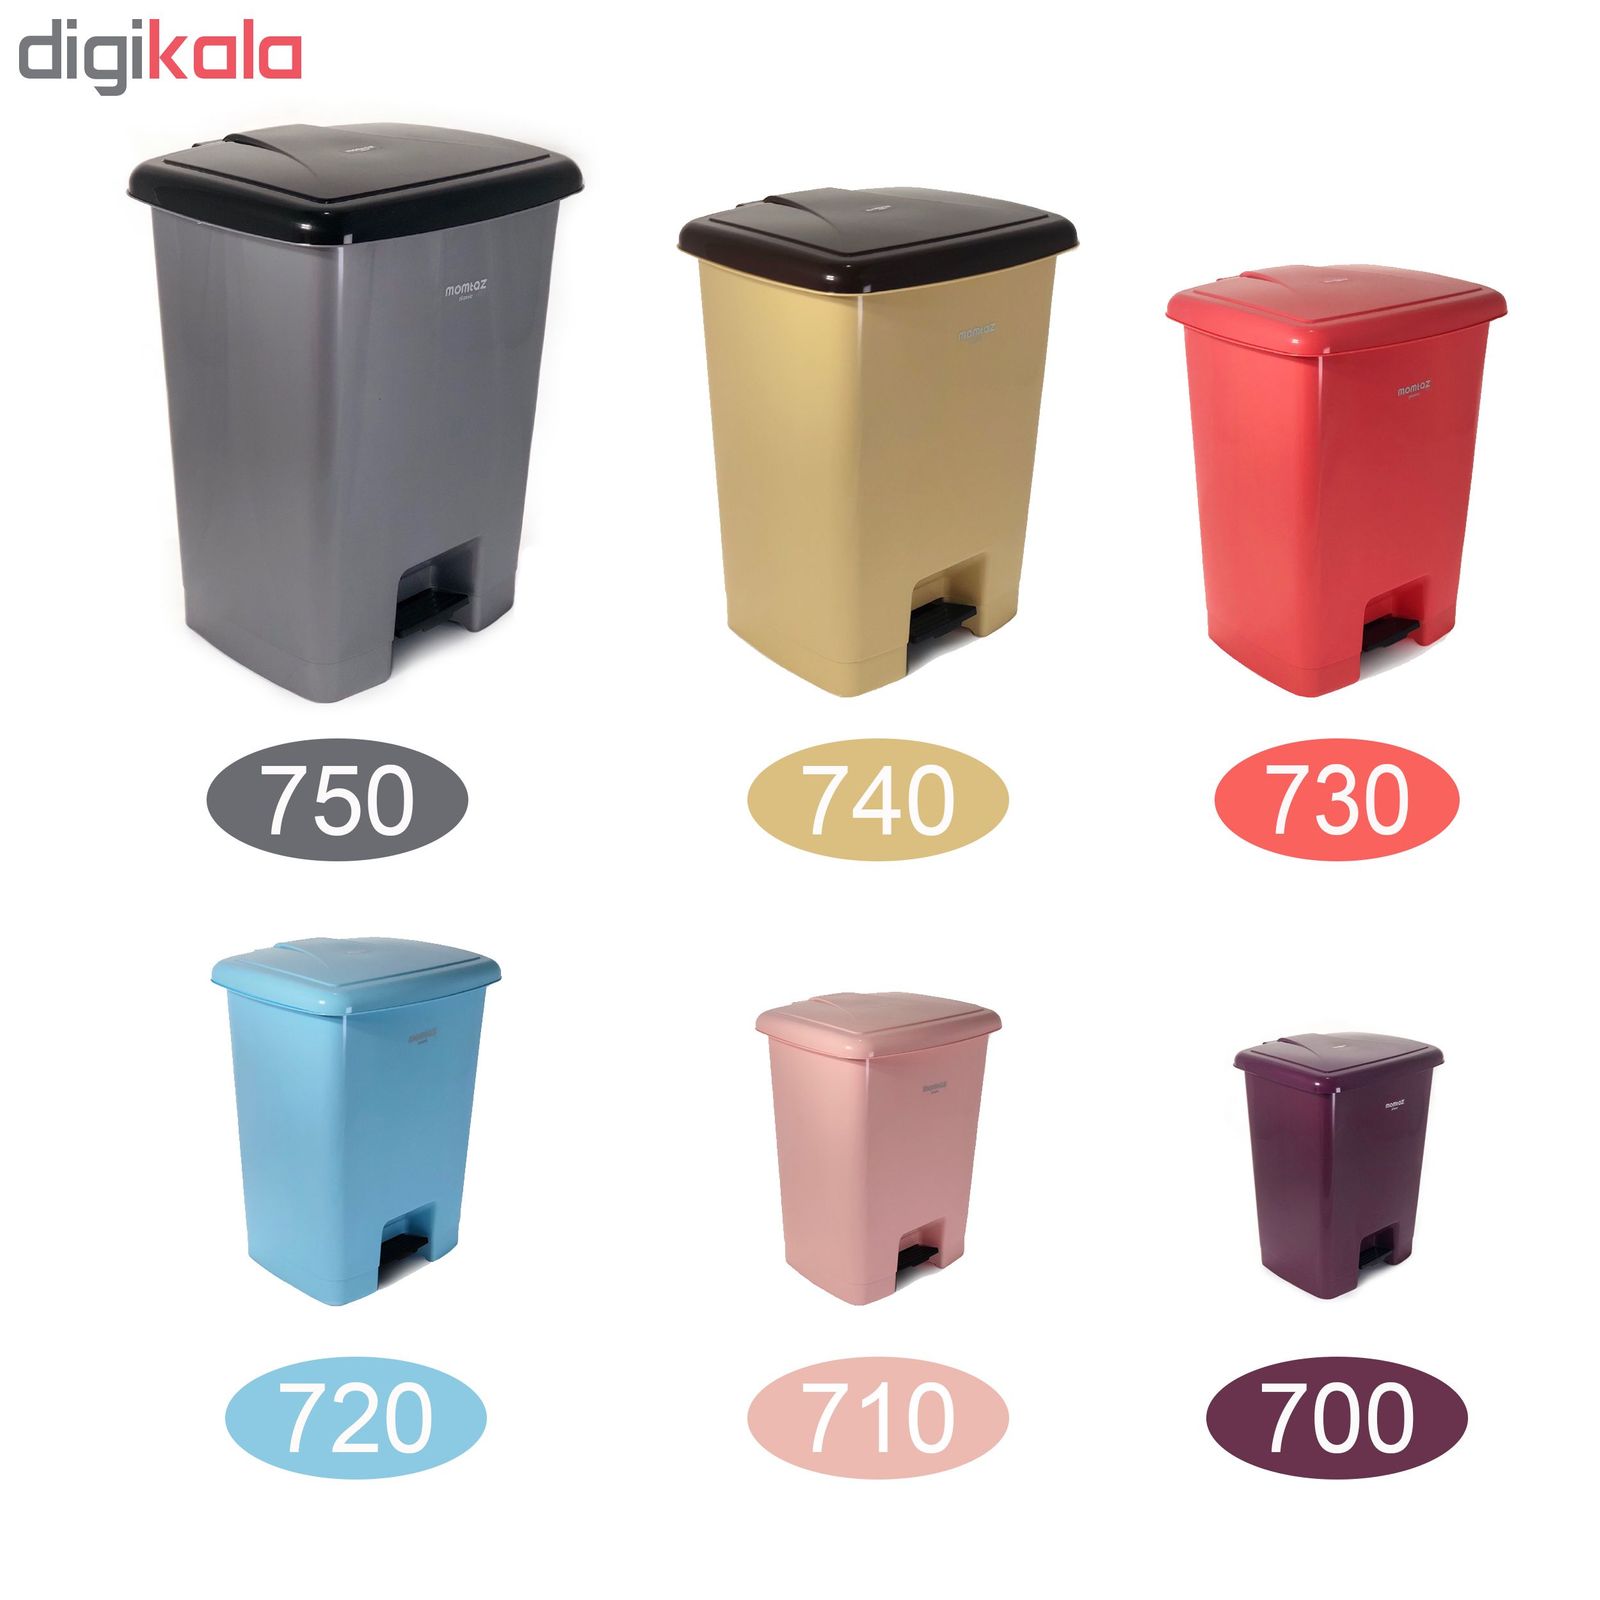 سطل زباله پدالی ممتاز پلاستیک مدل 700 ظرفیت ۳ لیتری